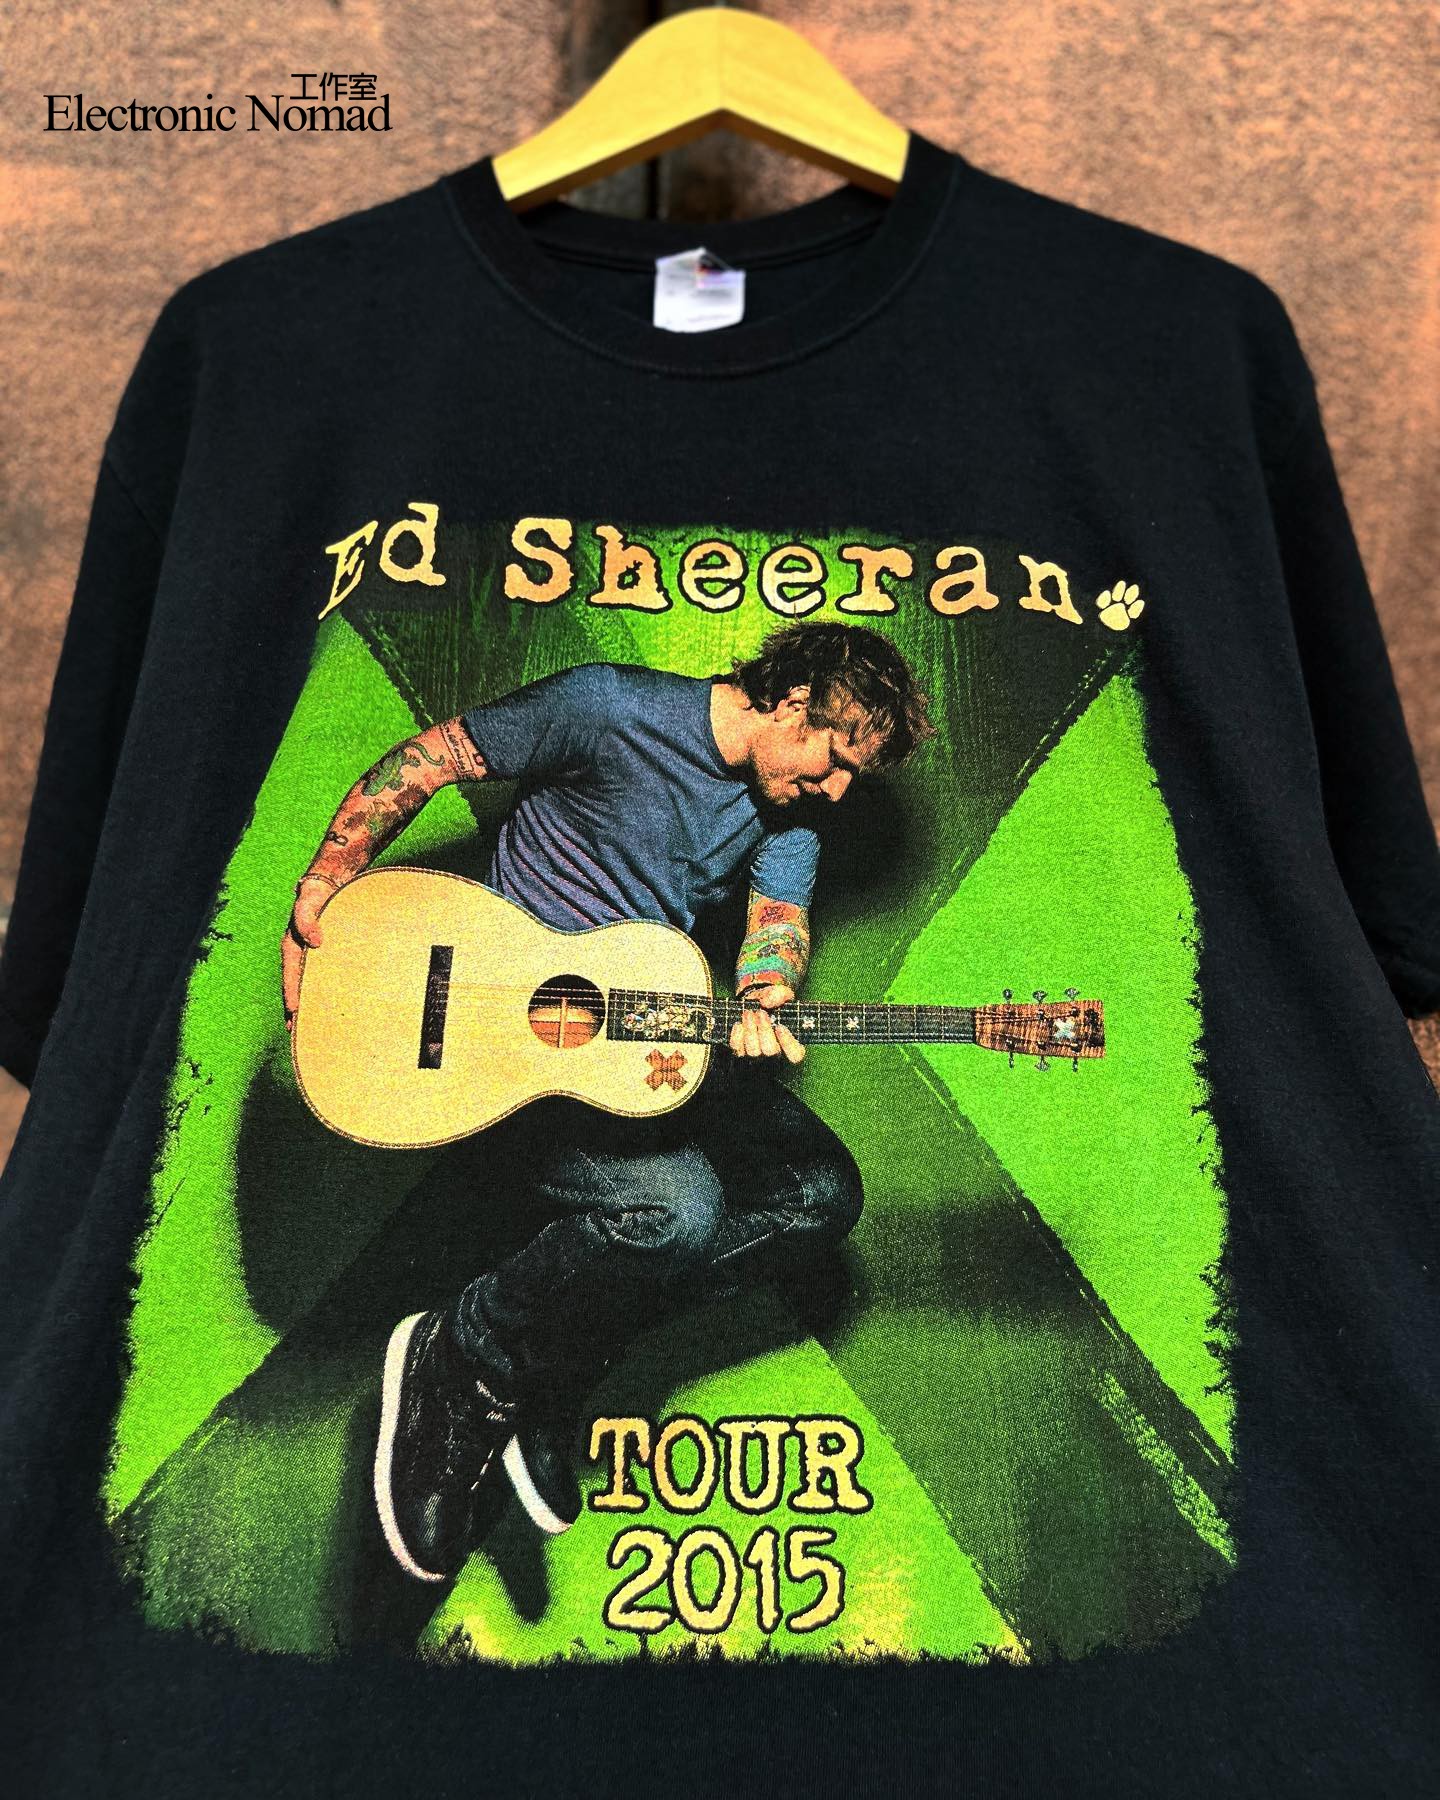 EN水洗大师歌手 Ed Sheeran 艾德 希兰90年代Short shirt 短袖T恤